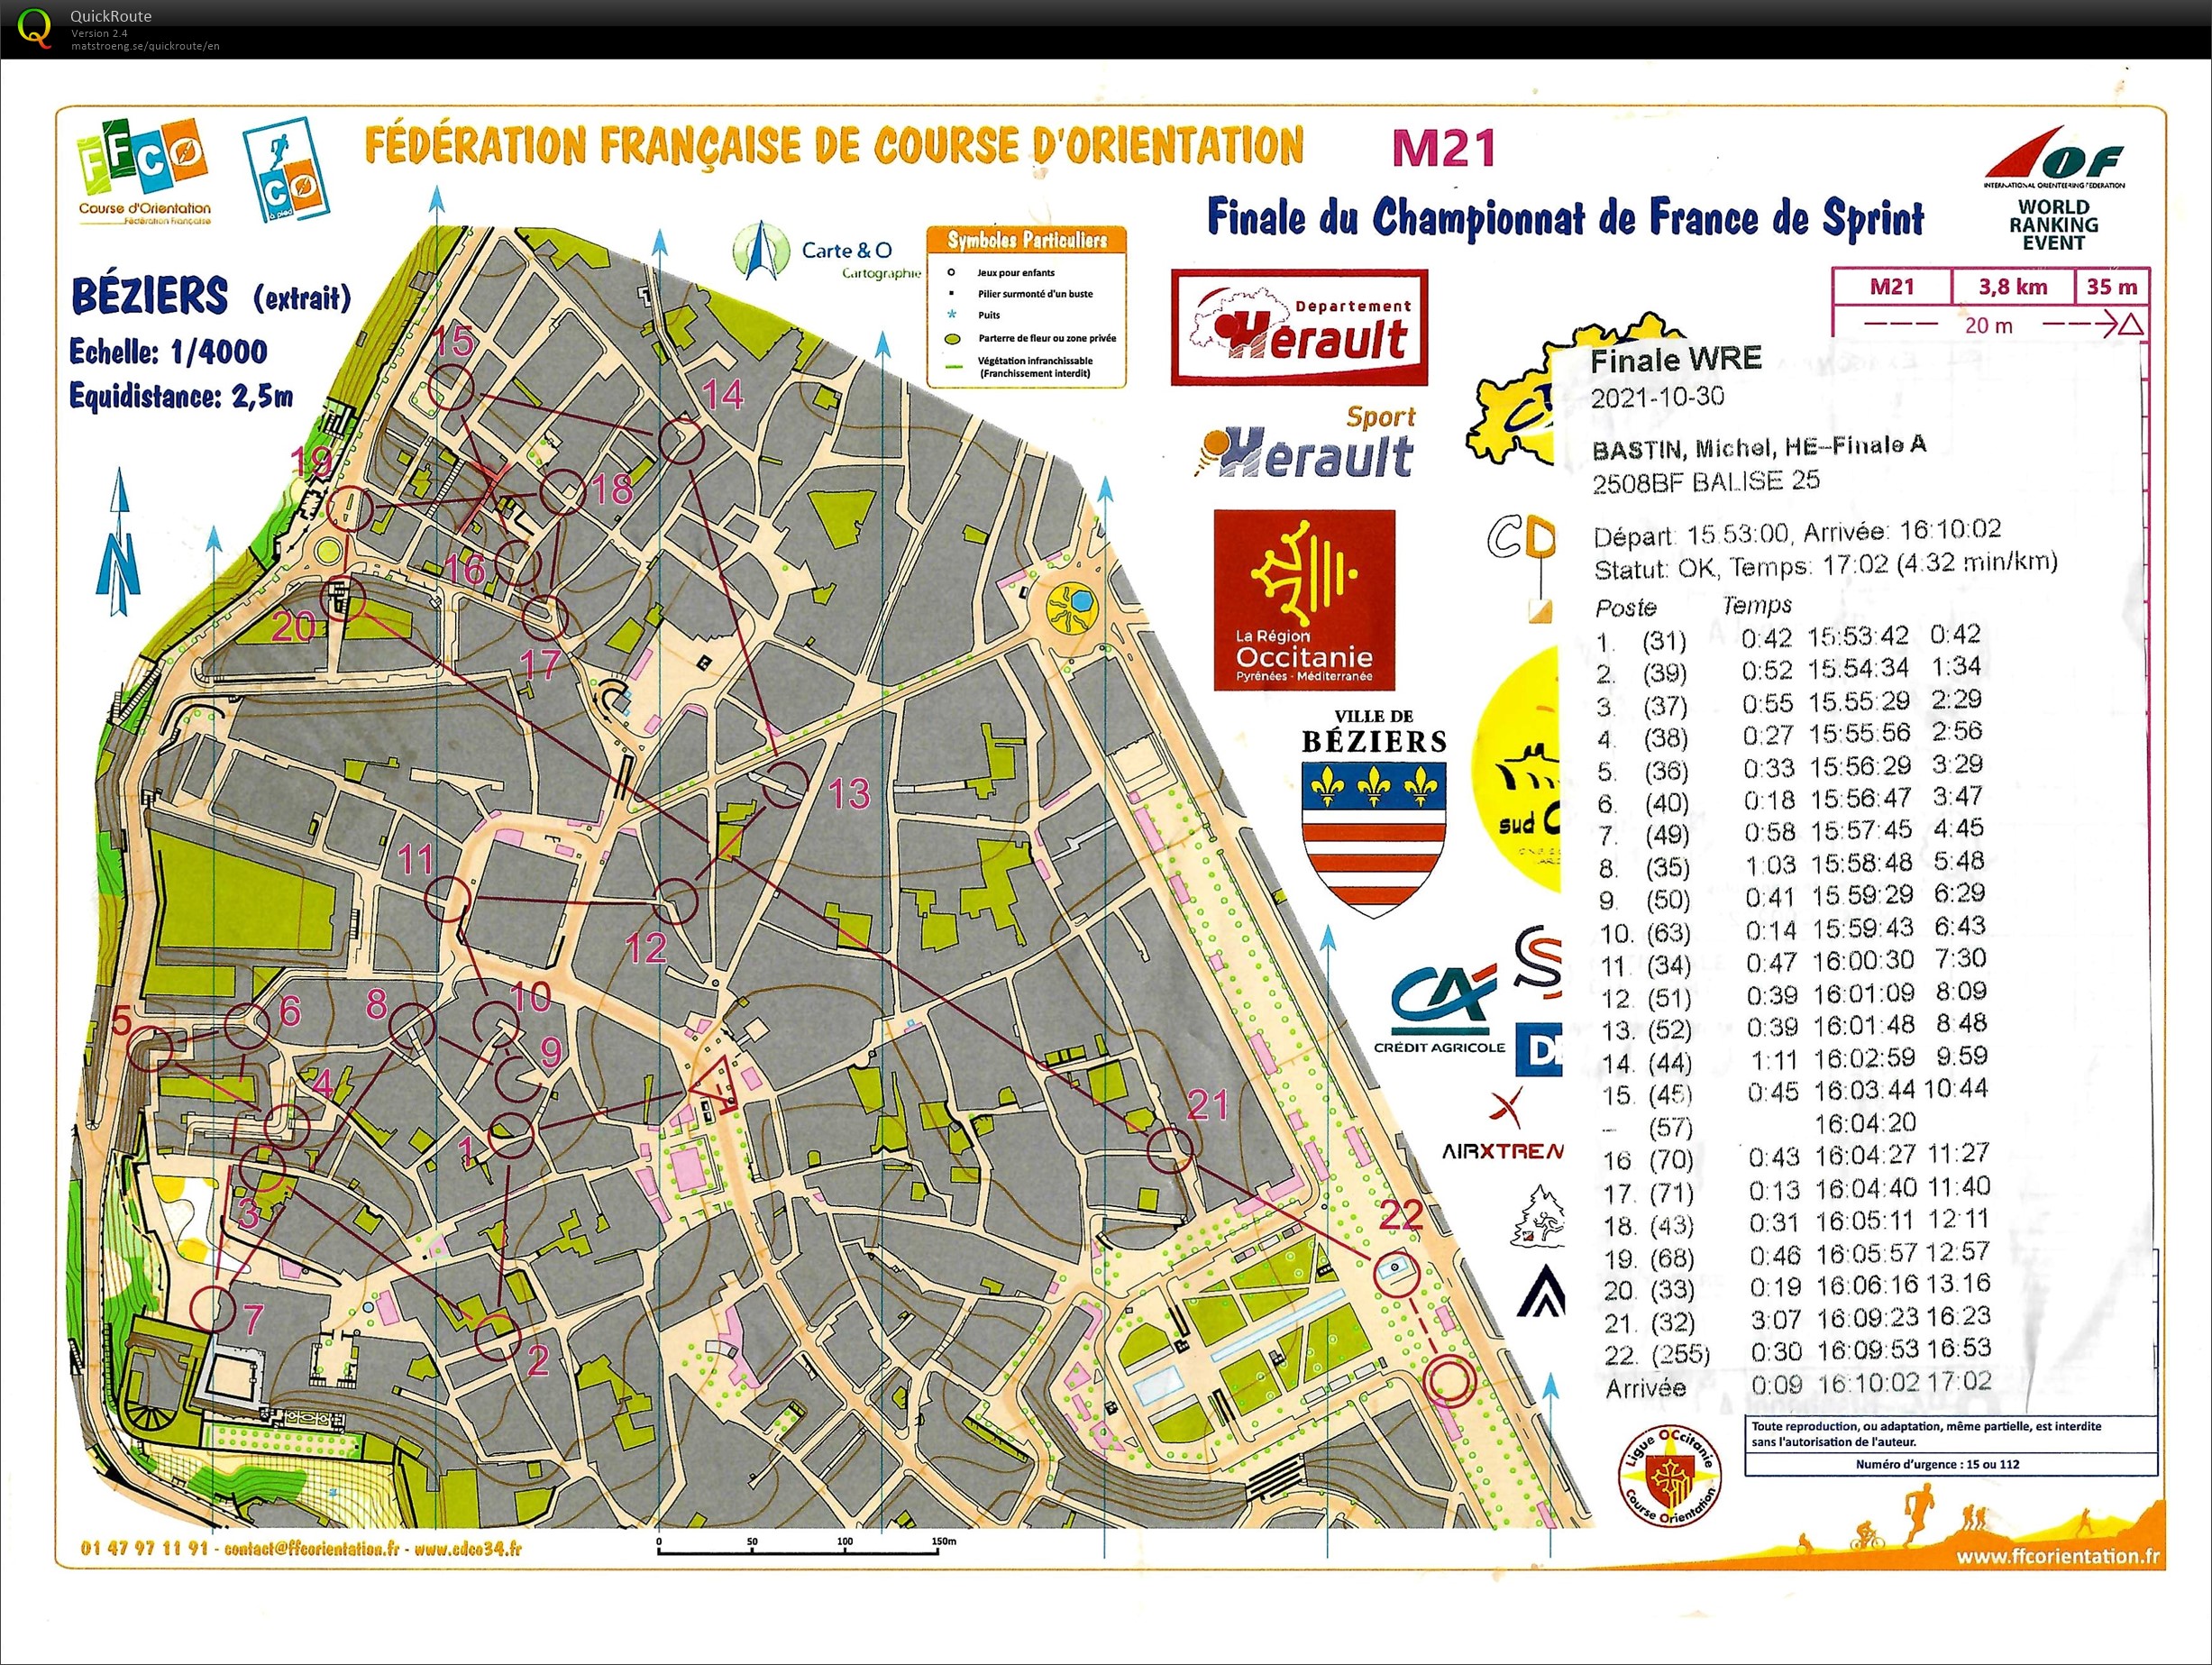 Champtionnat de France de Sprint - Finale (2021-10-30)